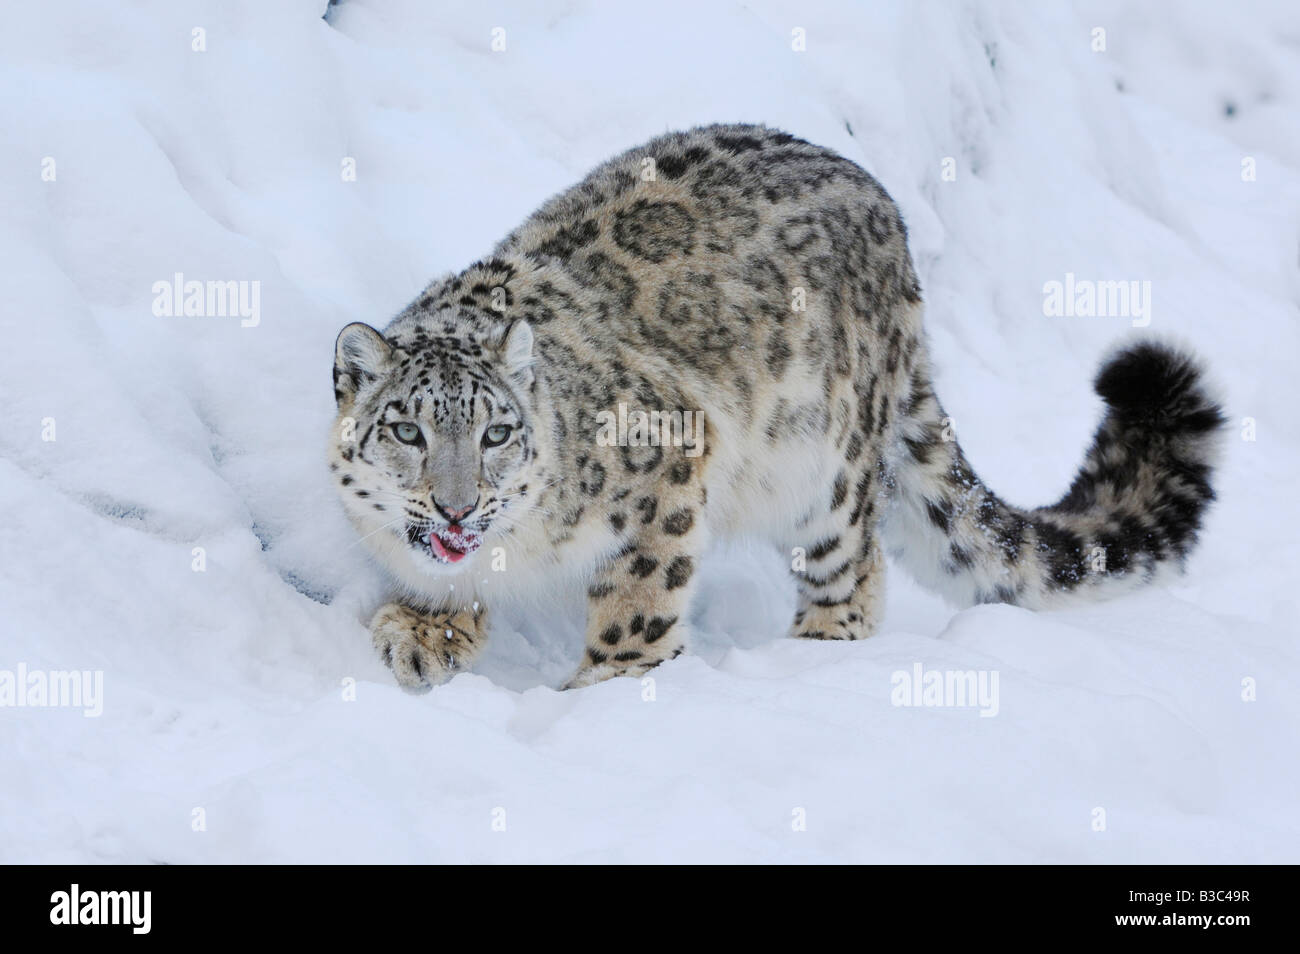 Léopard des neiges (Uncia uncia), des profils dans la neige, captive, Suisse Banque D'Images